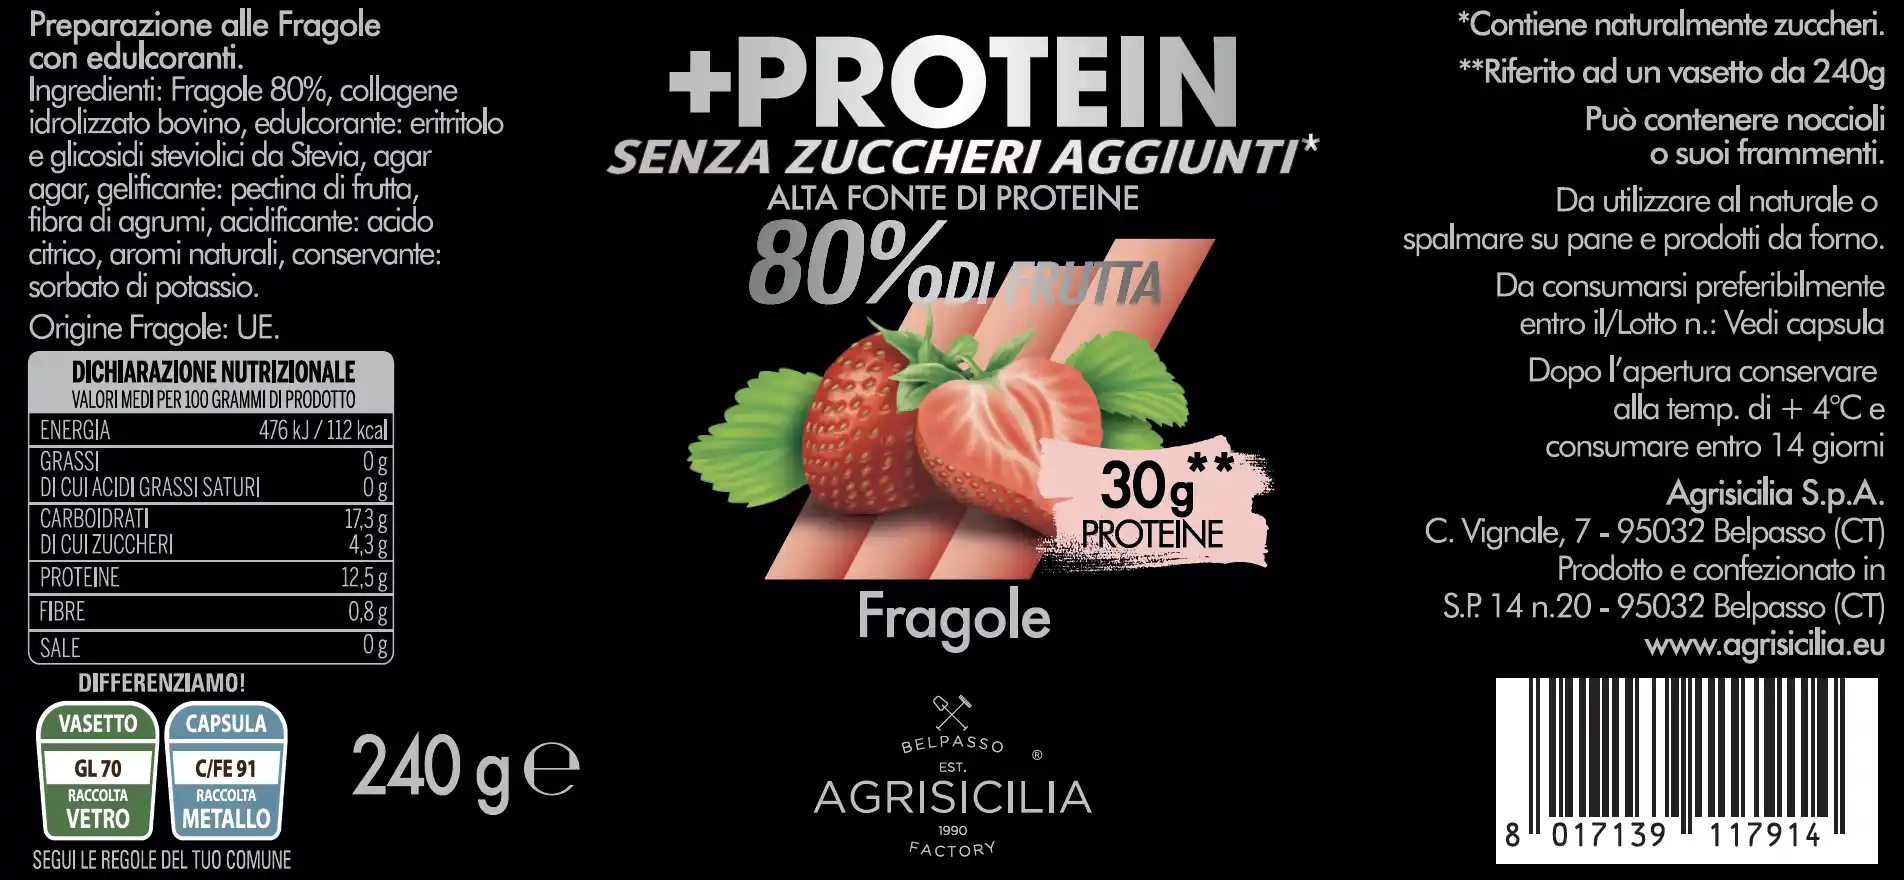 Fragole Protein Senza Zuccheri Aggiunti Etichetta